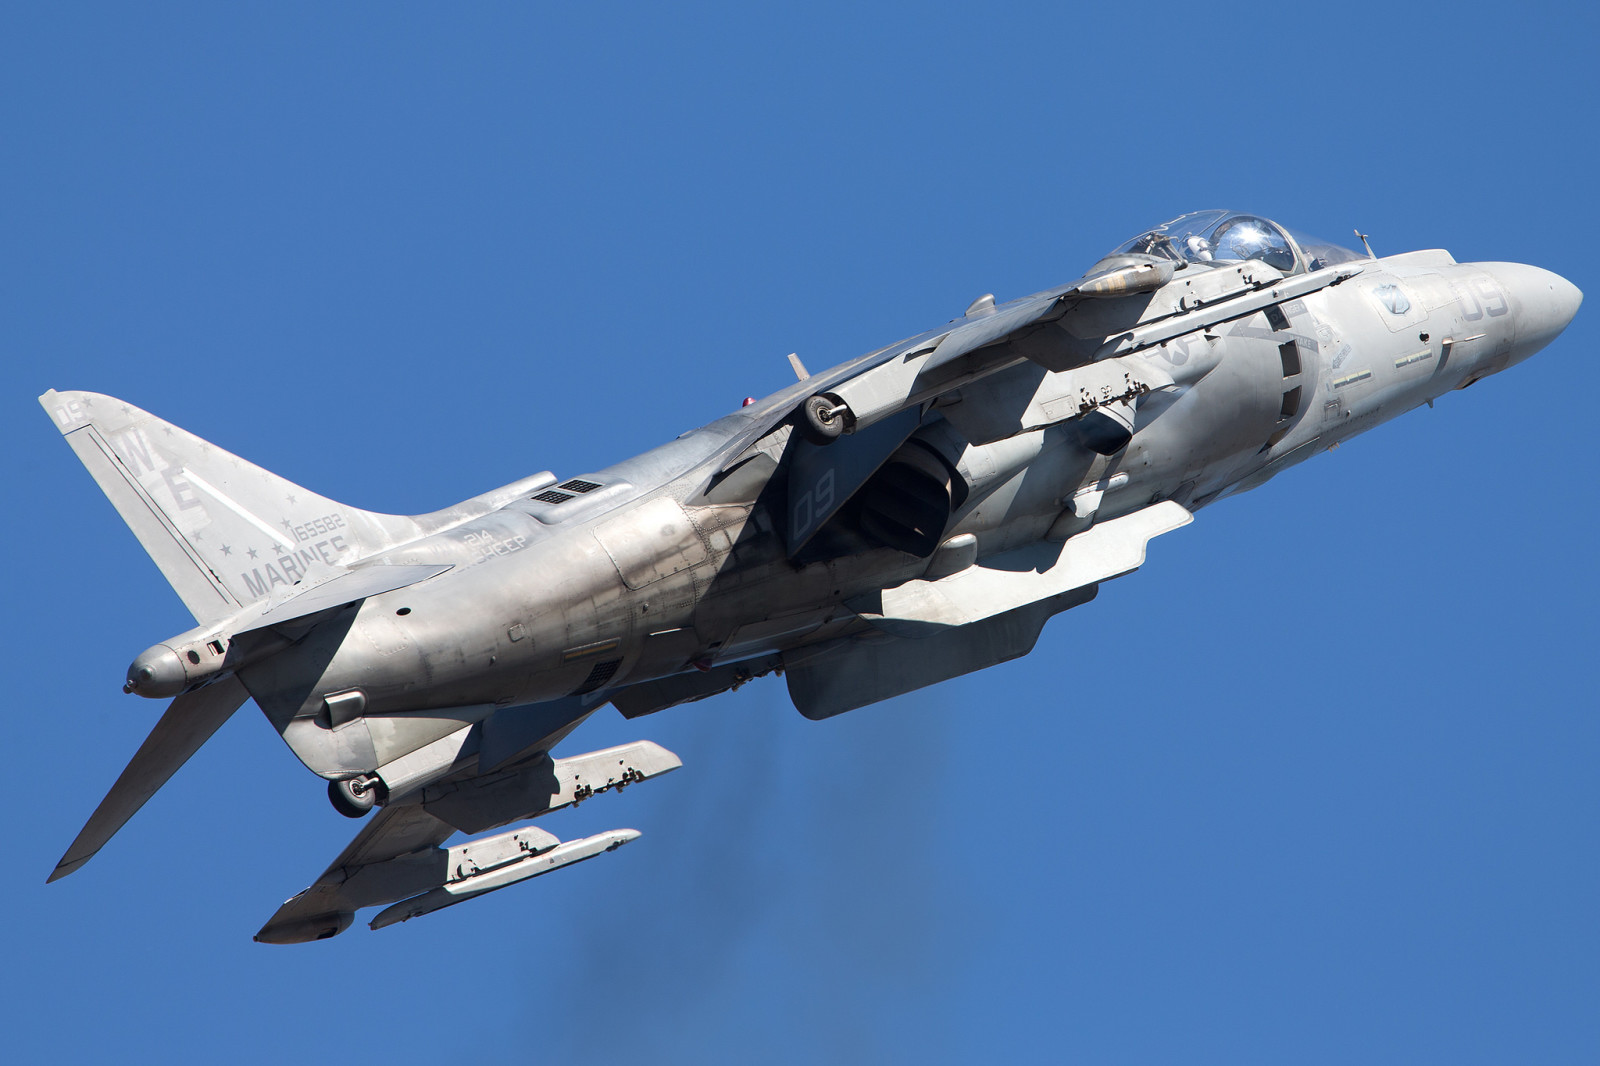 Tấn công, Harrier II, AV-8B, "Harrier" II